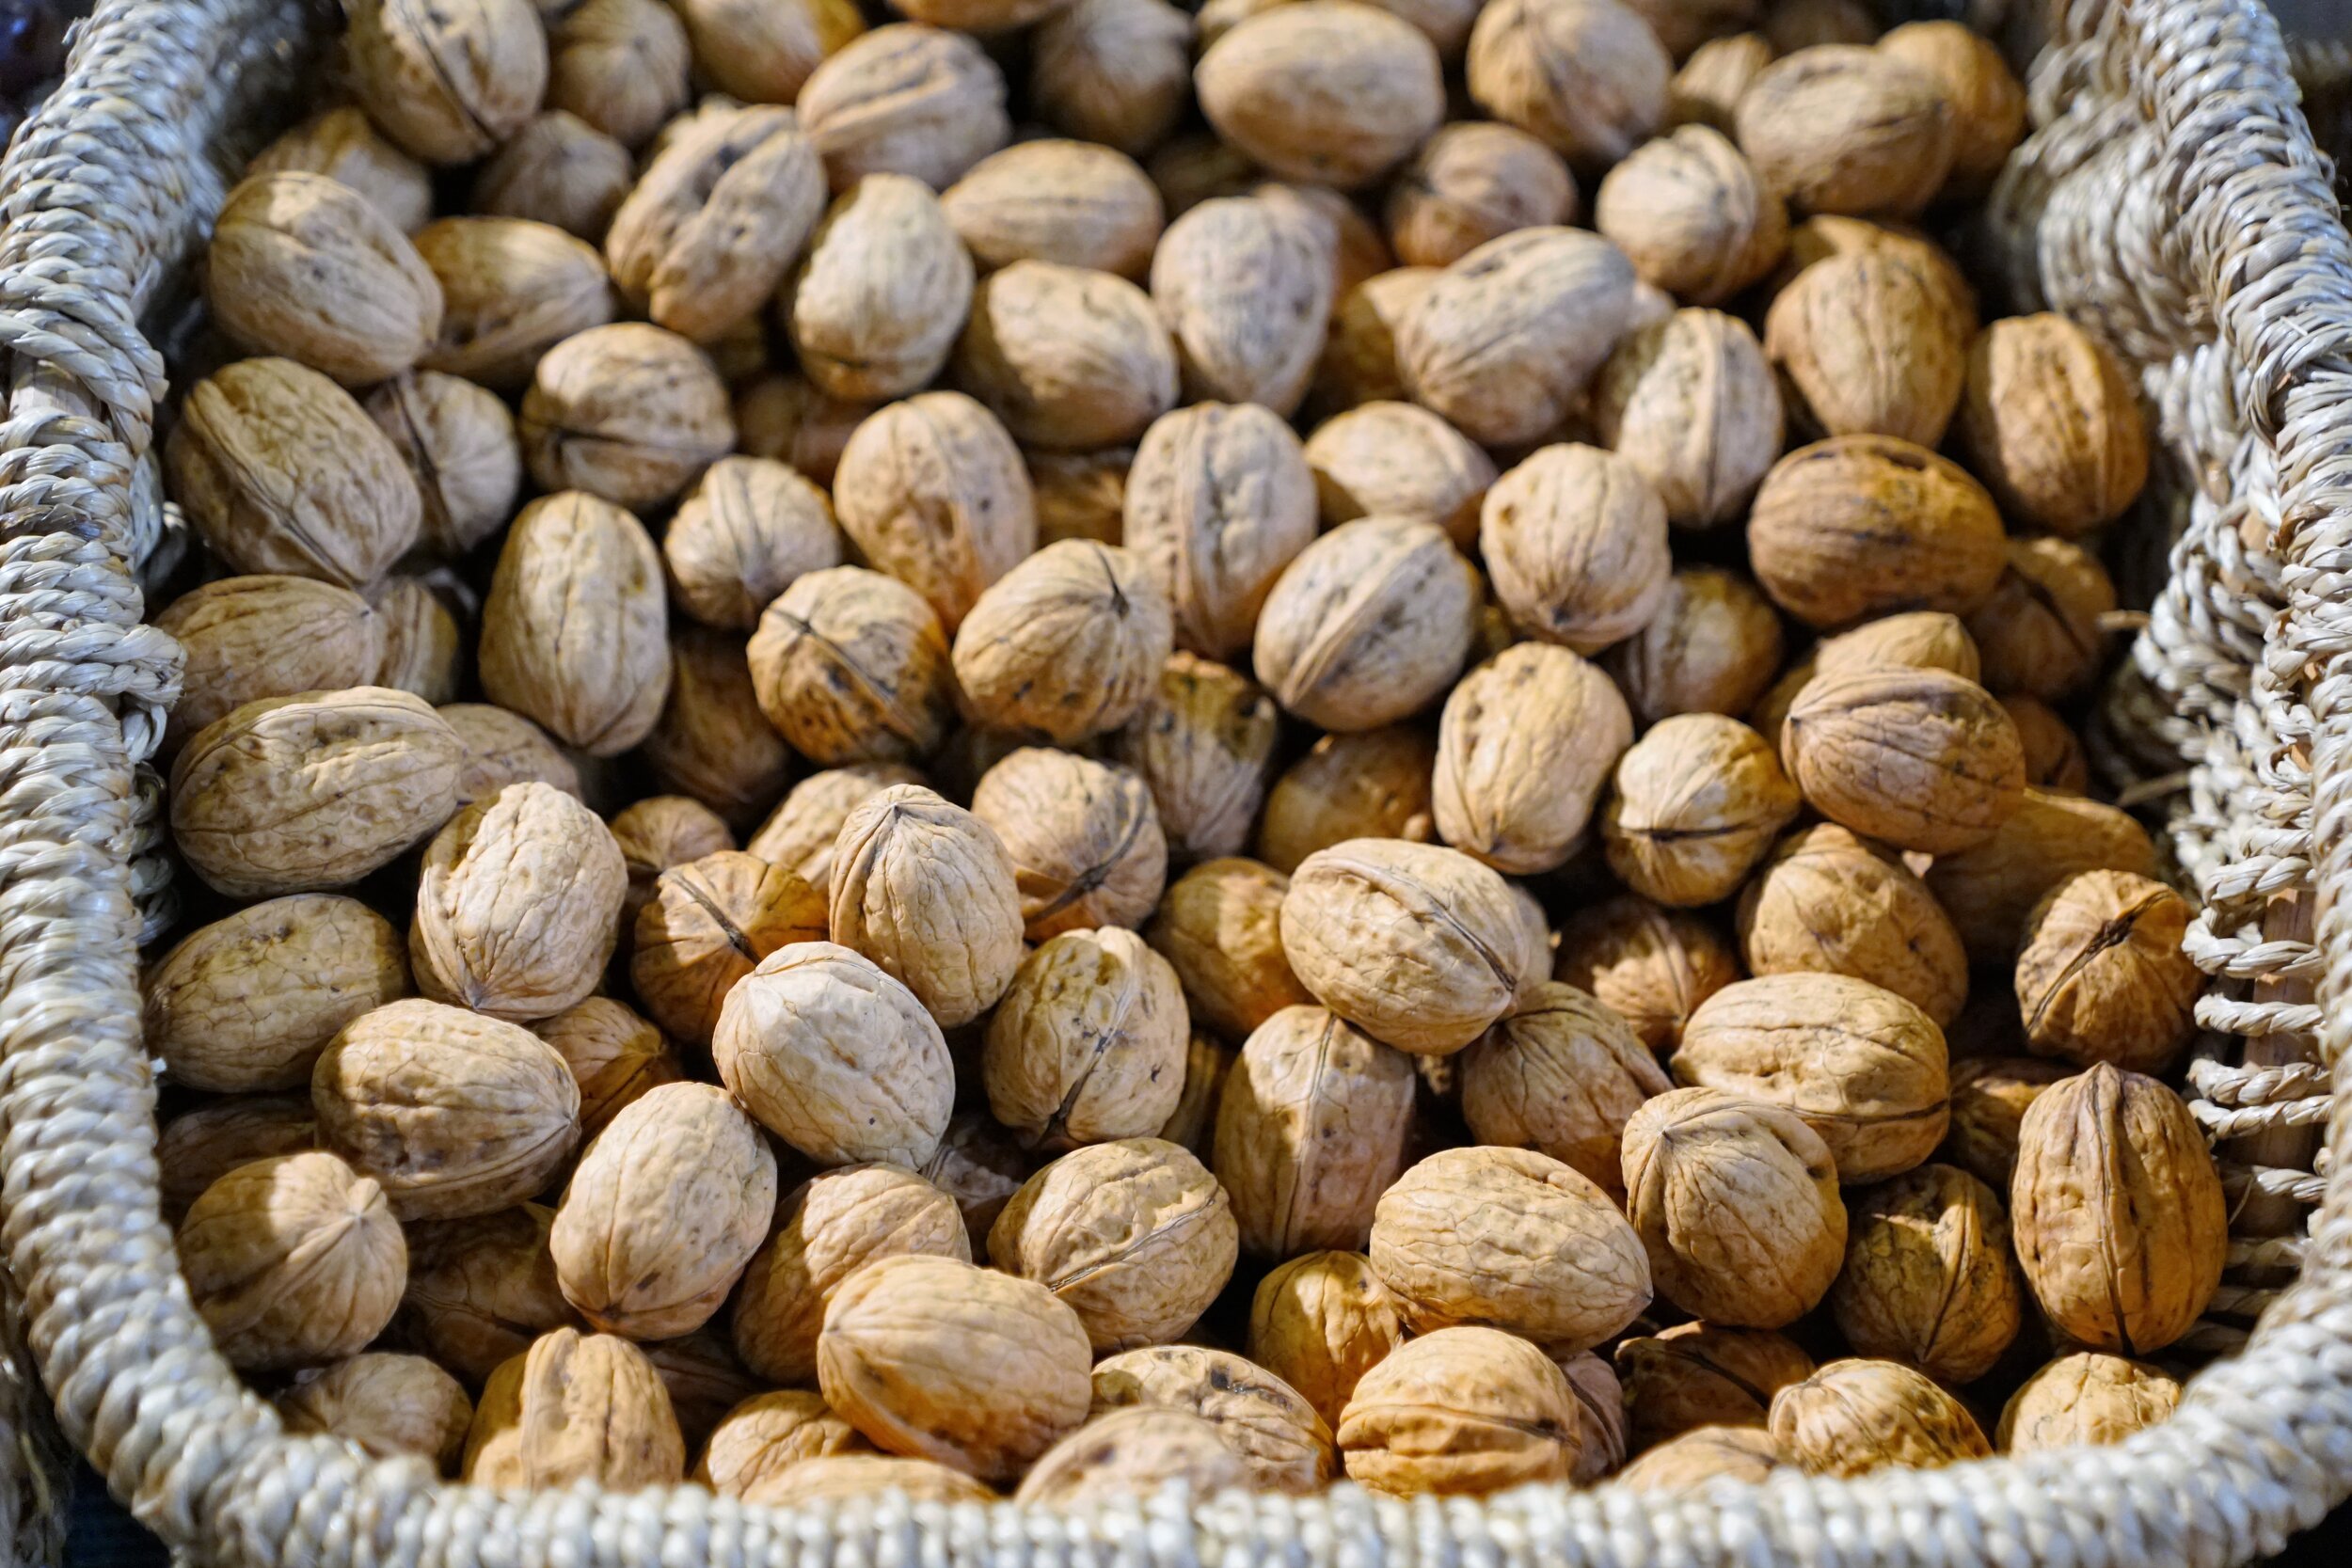 Basket of Nuts.jpg